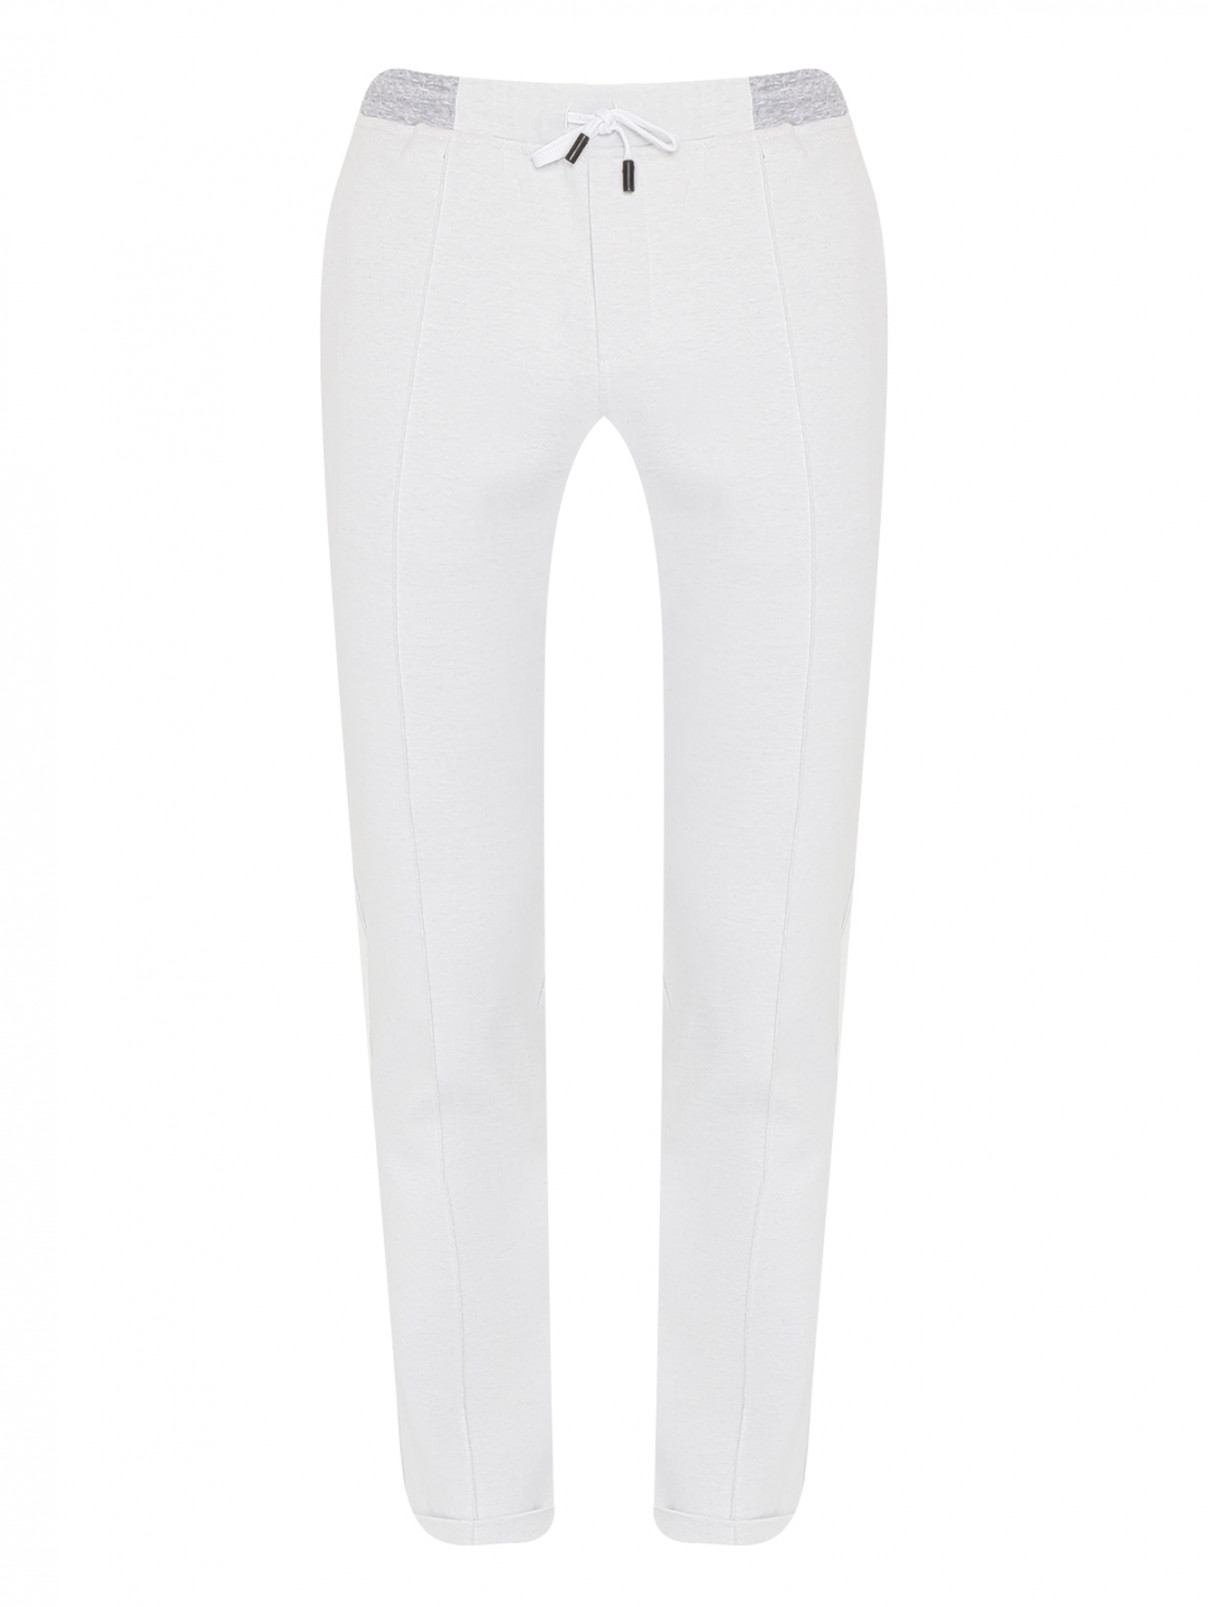 Трикотажные брюки из хлопка на резинке Capobianco  –  Общий вид  – Цвет:  Серый